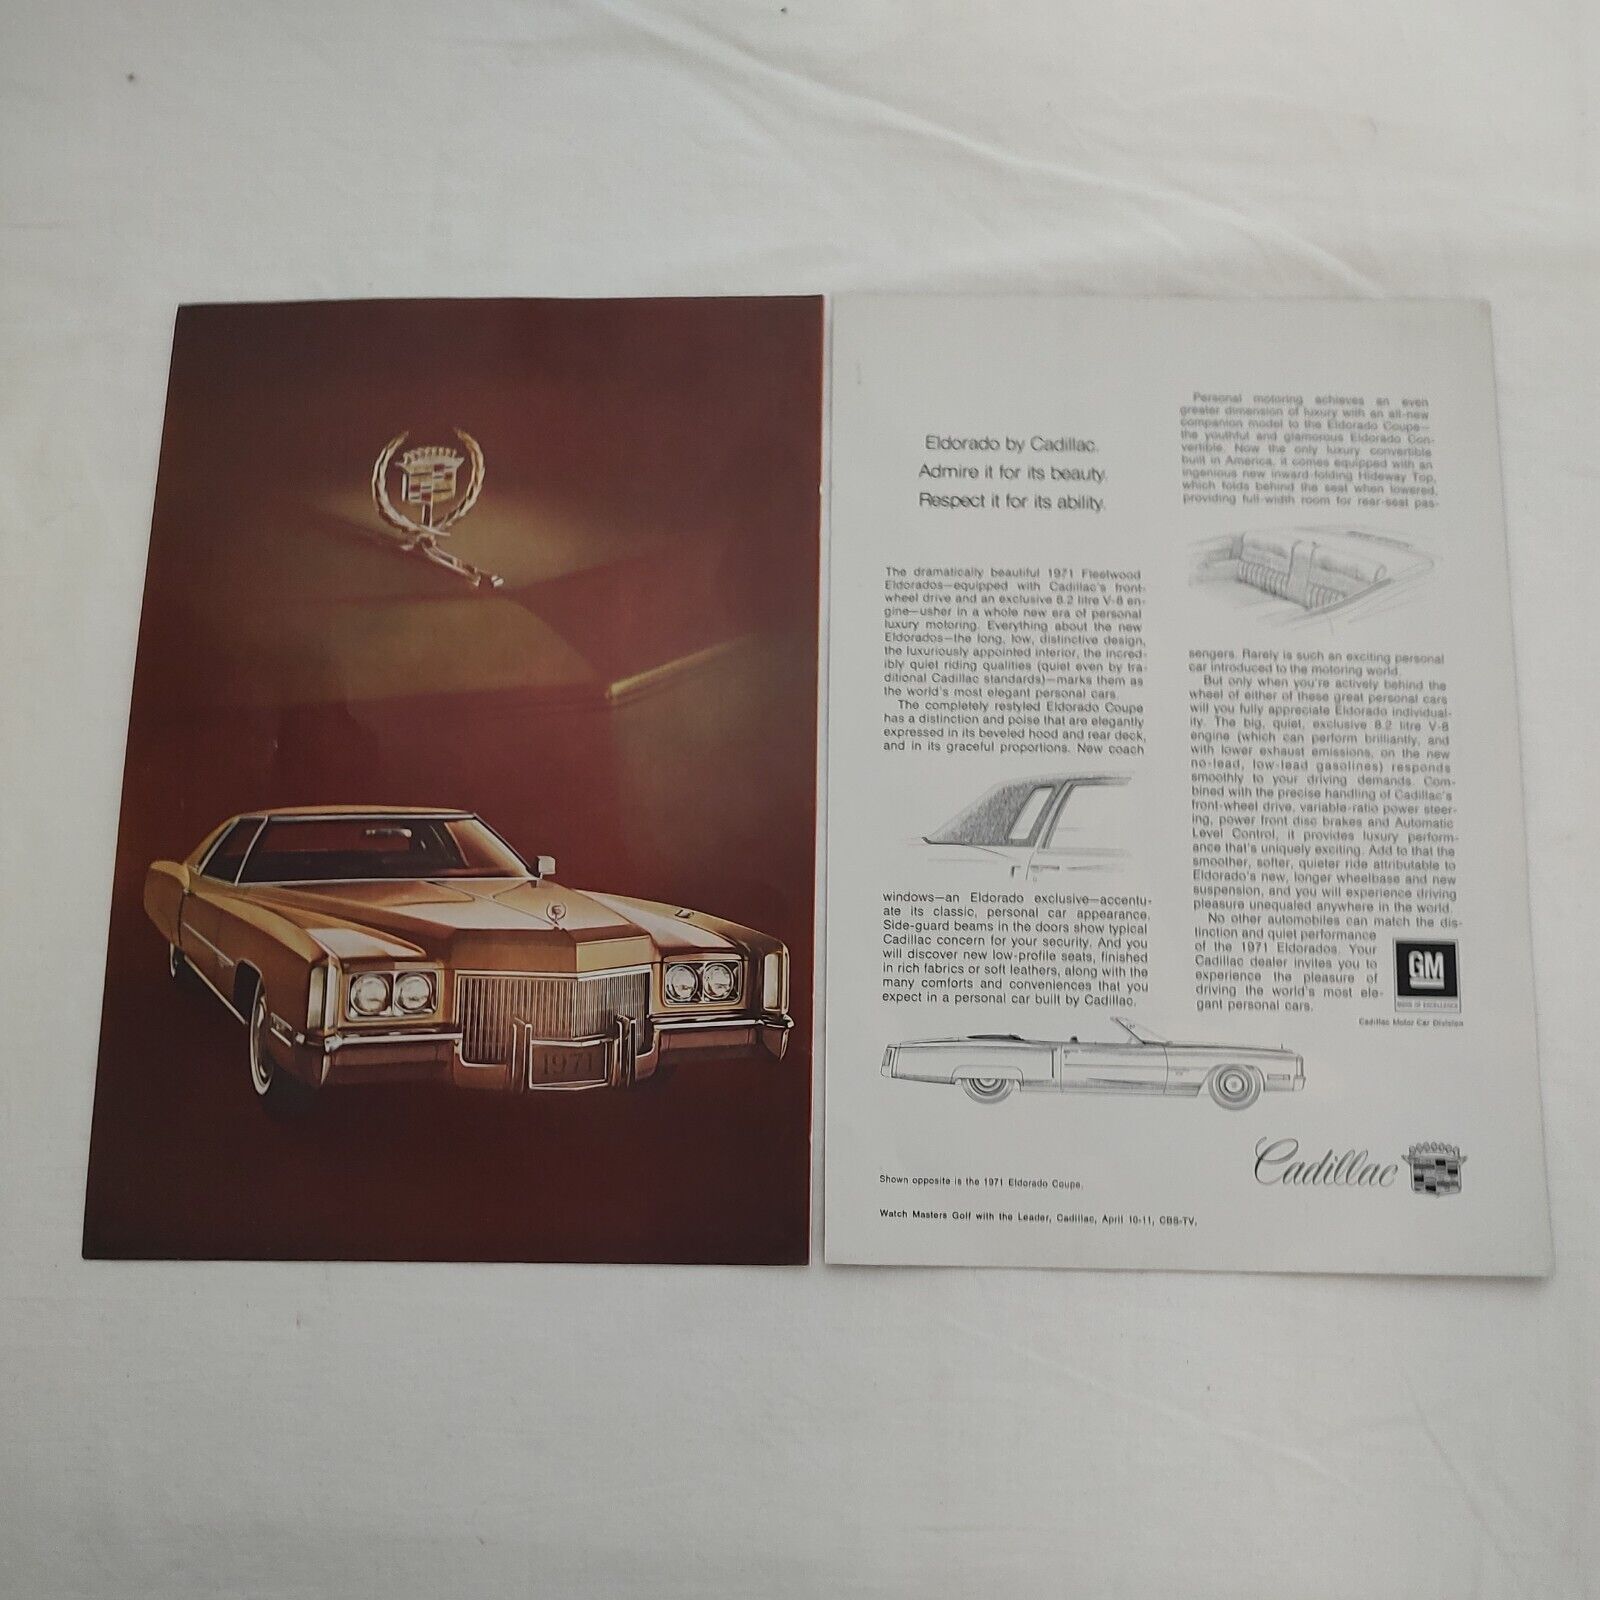 Cadillac 1971 Eldorado Convertible Car Coupe DeVille Vintage Print Ad El Dorado